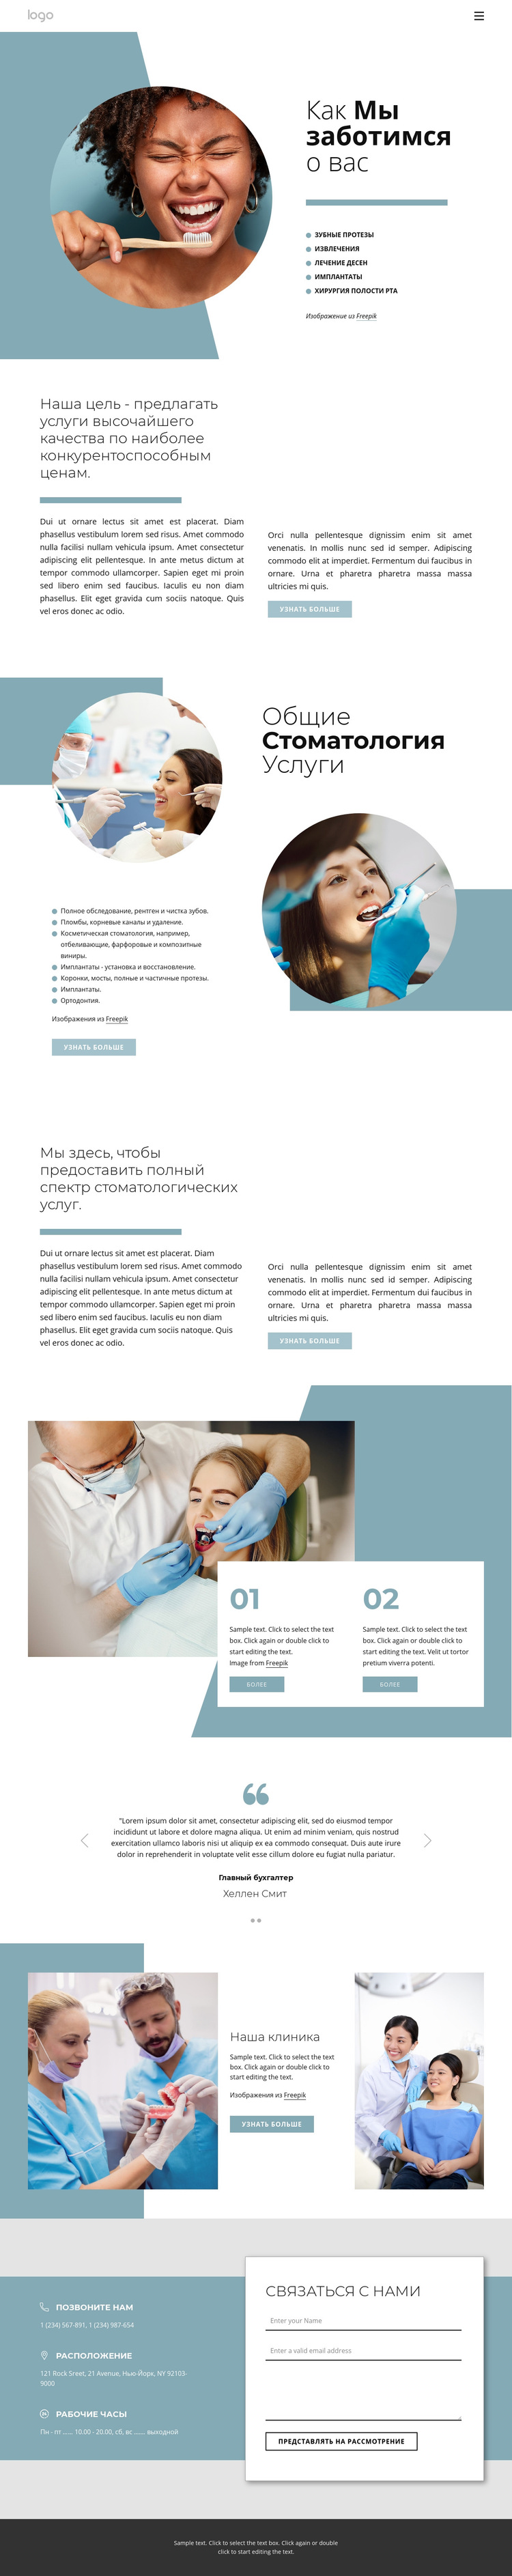 Качественные стоматологические услуги Шаблон веб-сайта